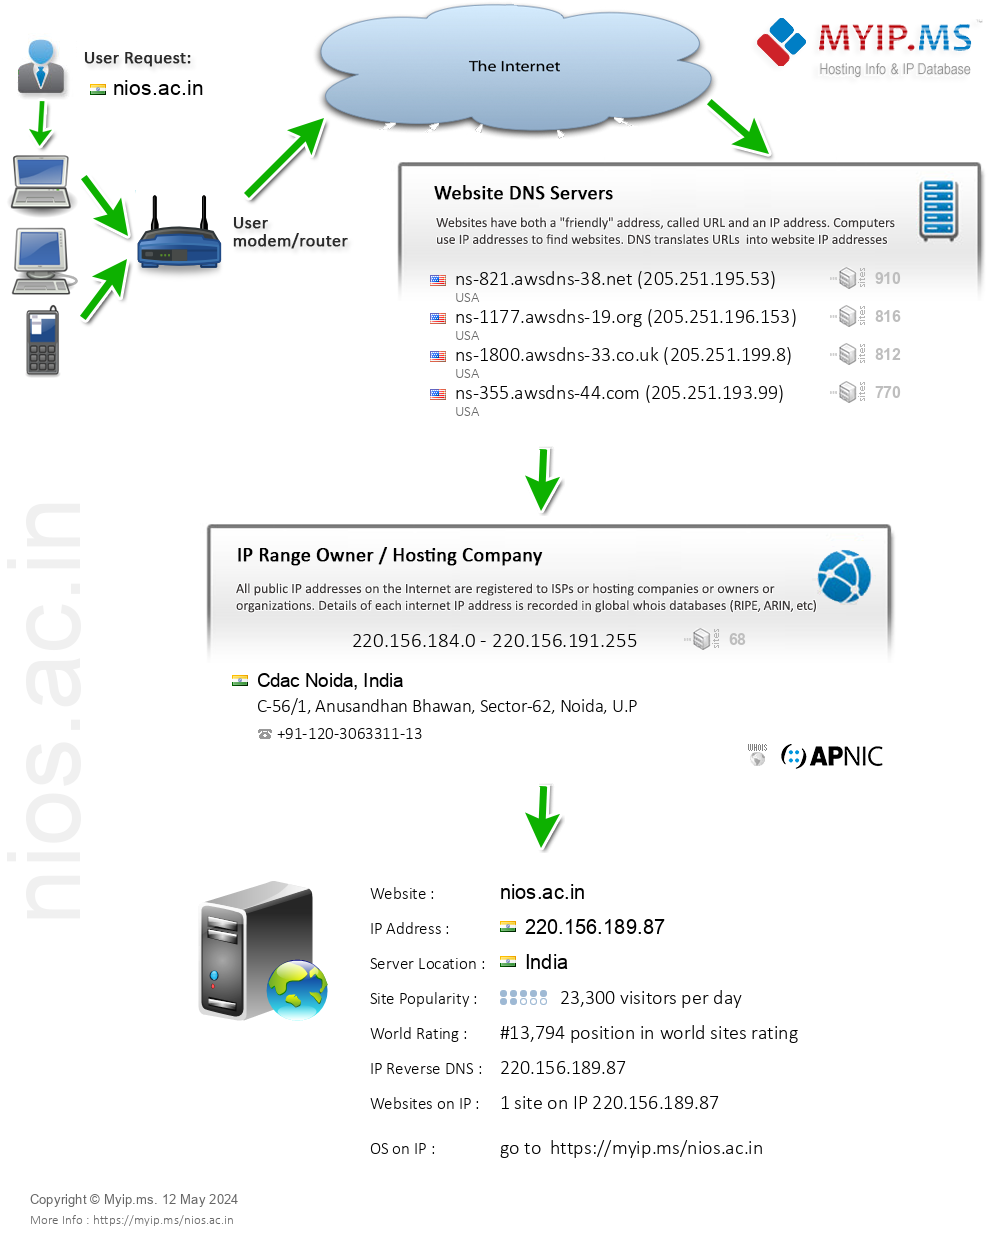 Nios.ac.in - Website Hosting Visual IP Diagram